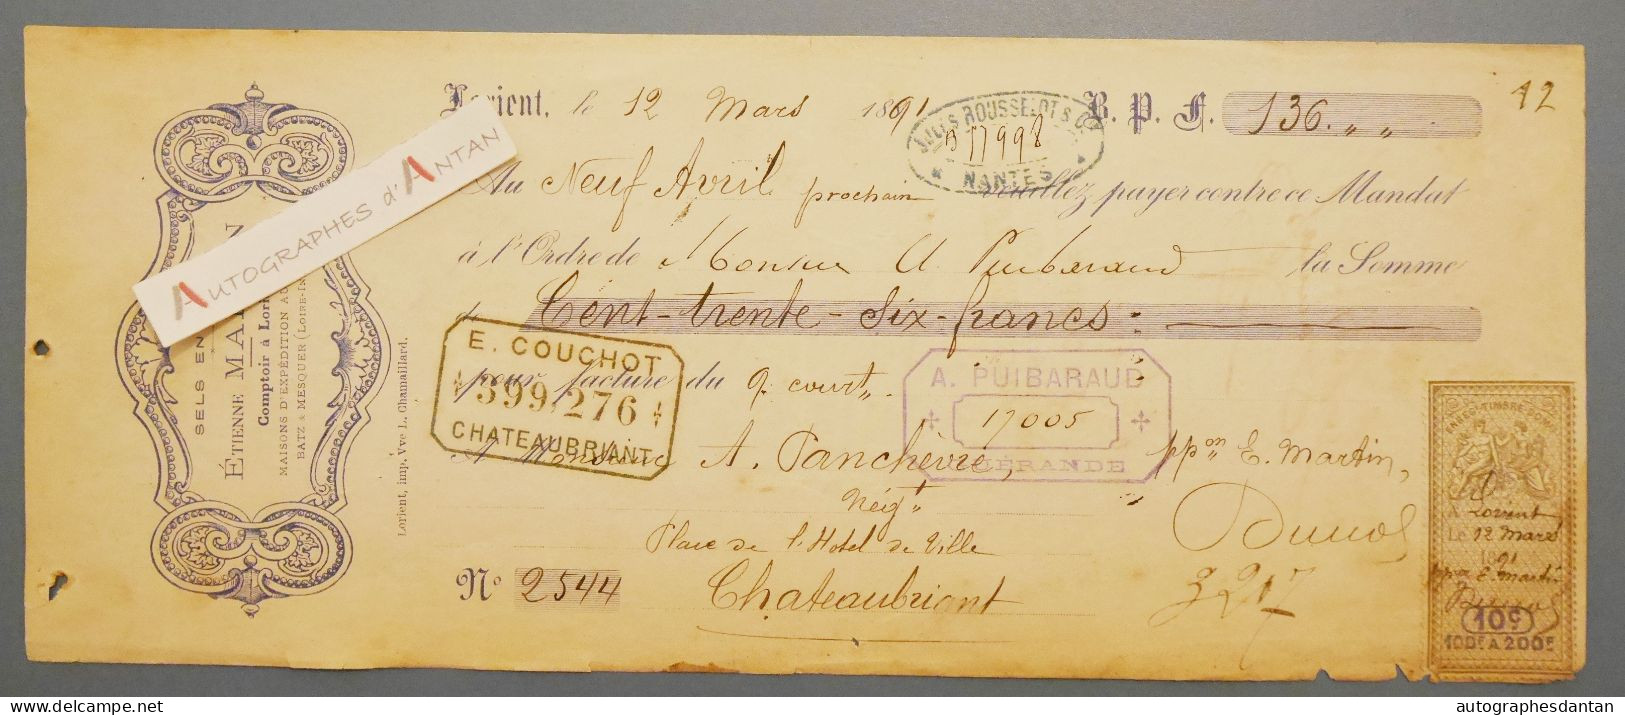 ● Lorient 1891 Etienne MARTIN Sels En Gros - Panchevre Négociant à Chateaubriant - Rare Mandat Lettre De Change - Letras De Cambio